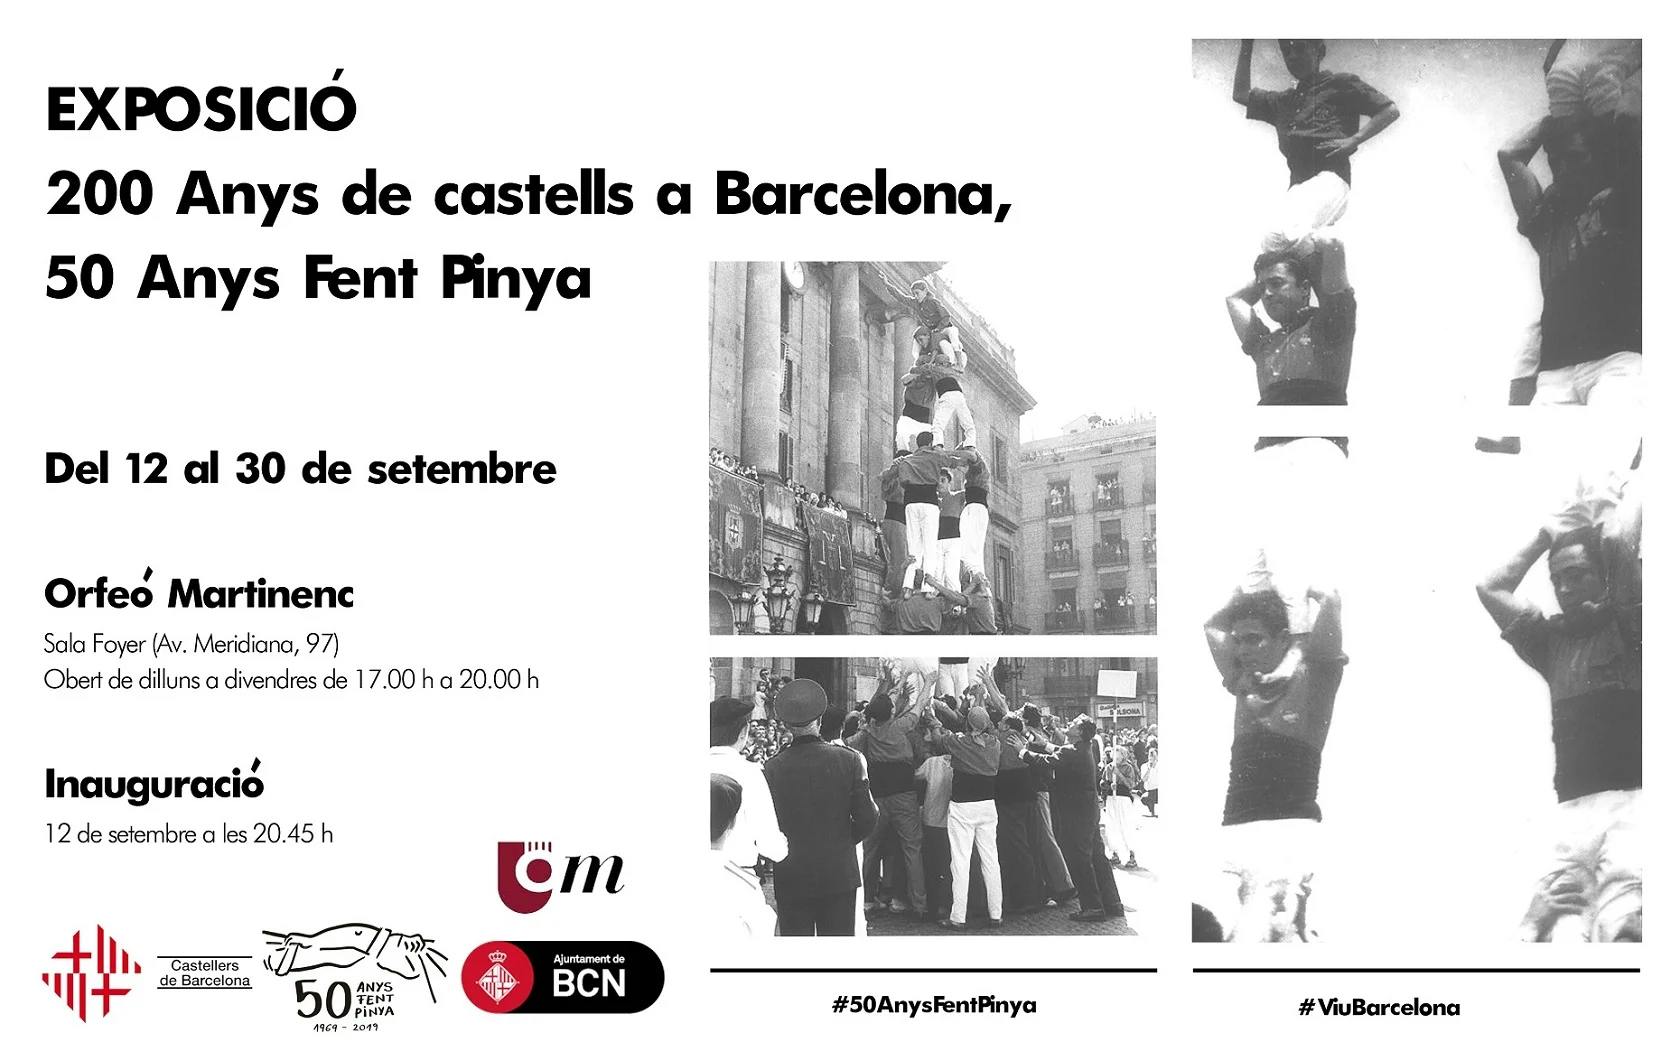 Exposició: 200 anys de castells a Barcelona, 50 anys fent pinya